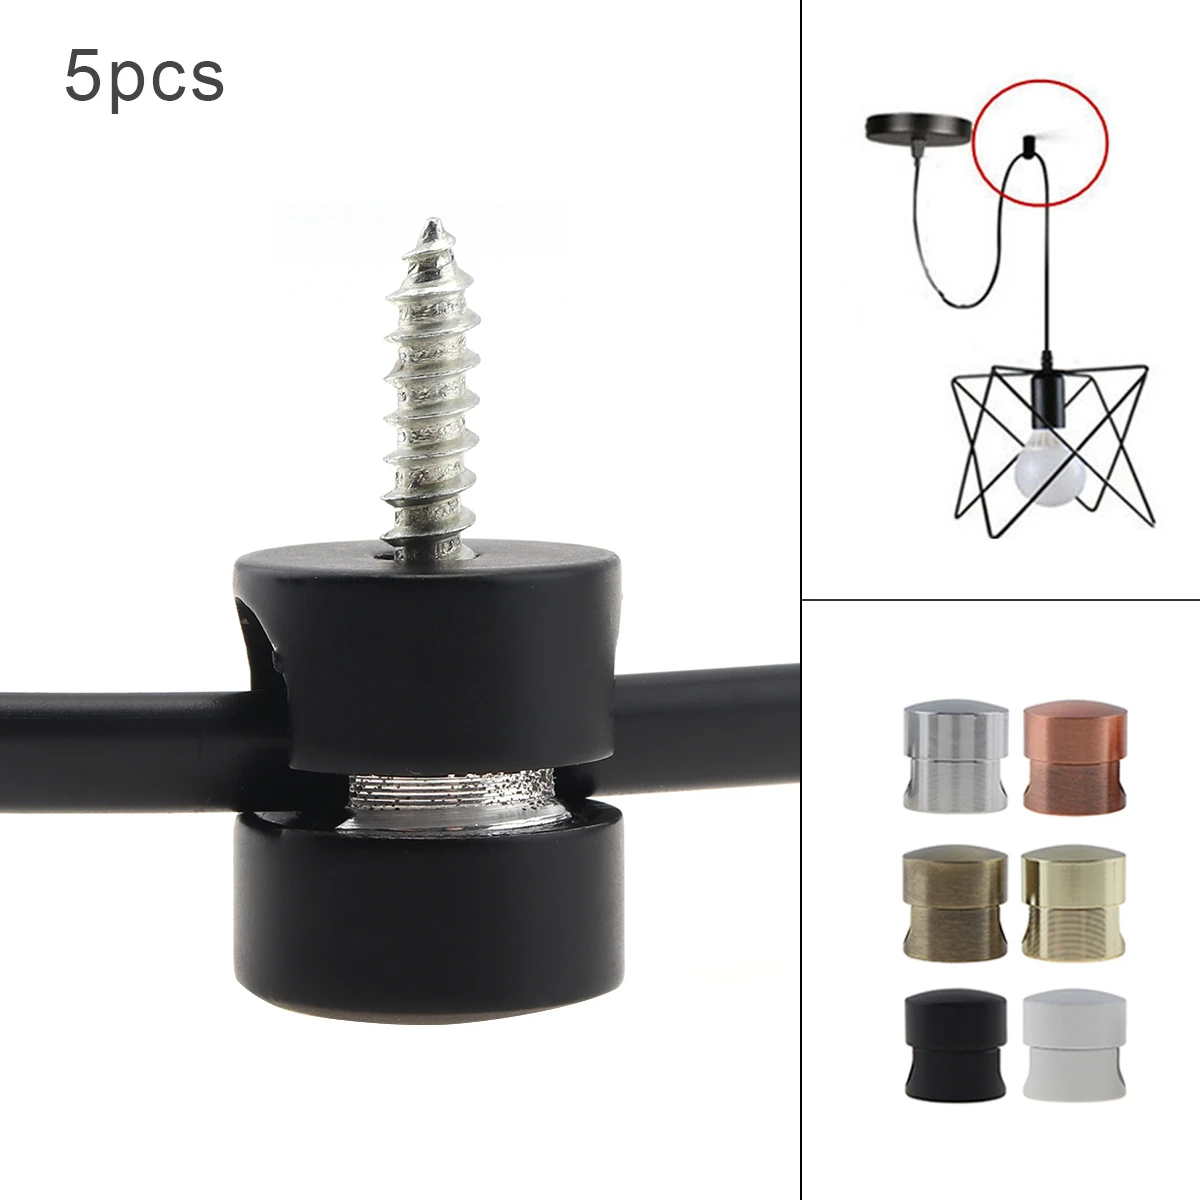 5pcs Pendant Light Cable Hook Chandelier Cable Hook for Chandelier Ceiling Lights Hanging Pendant Lighting Fixture Accessories